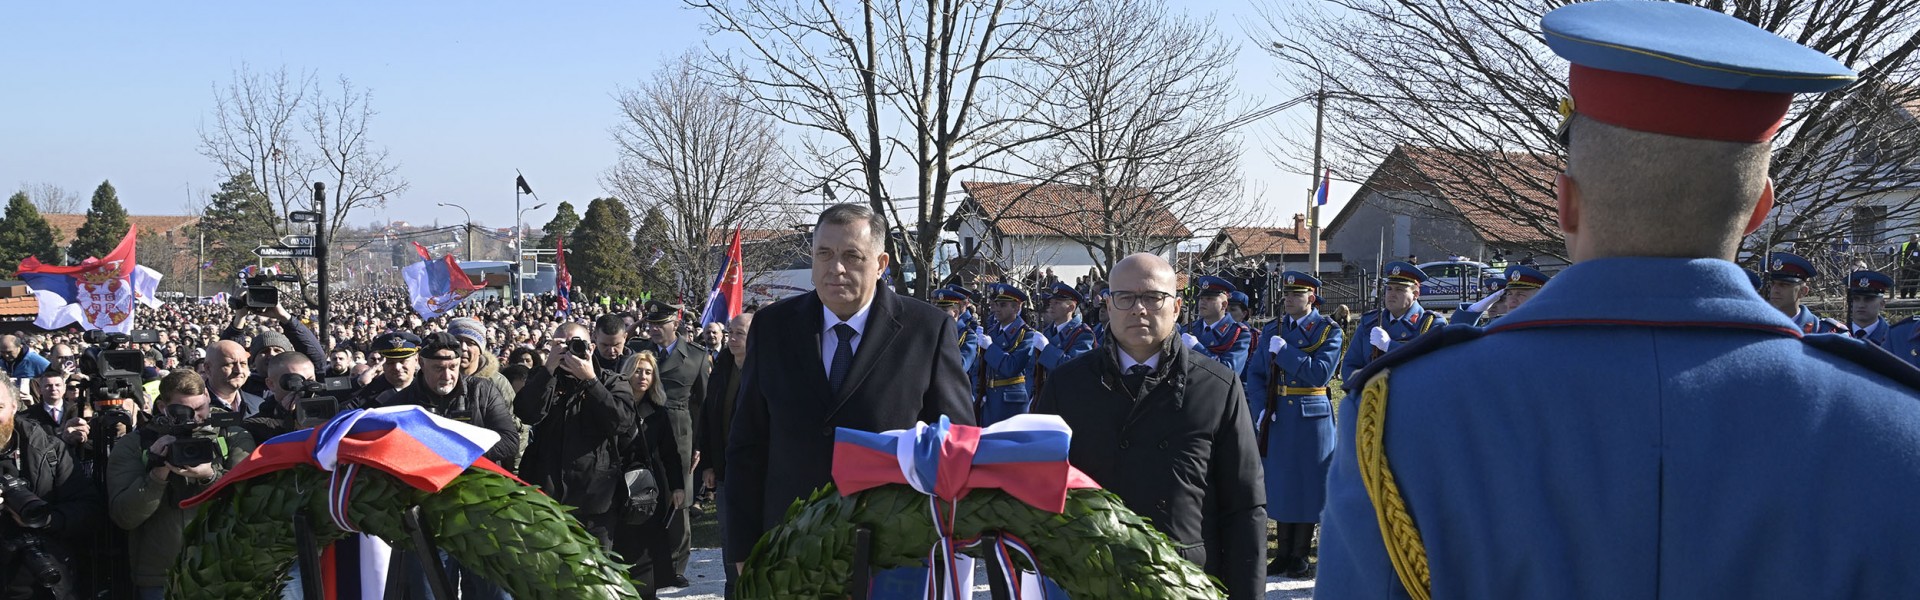 Централна државна церемонија поводом Дана државности Републике Србије 